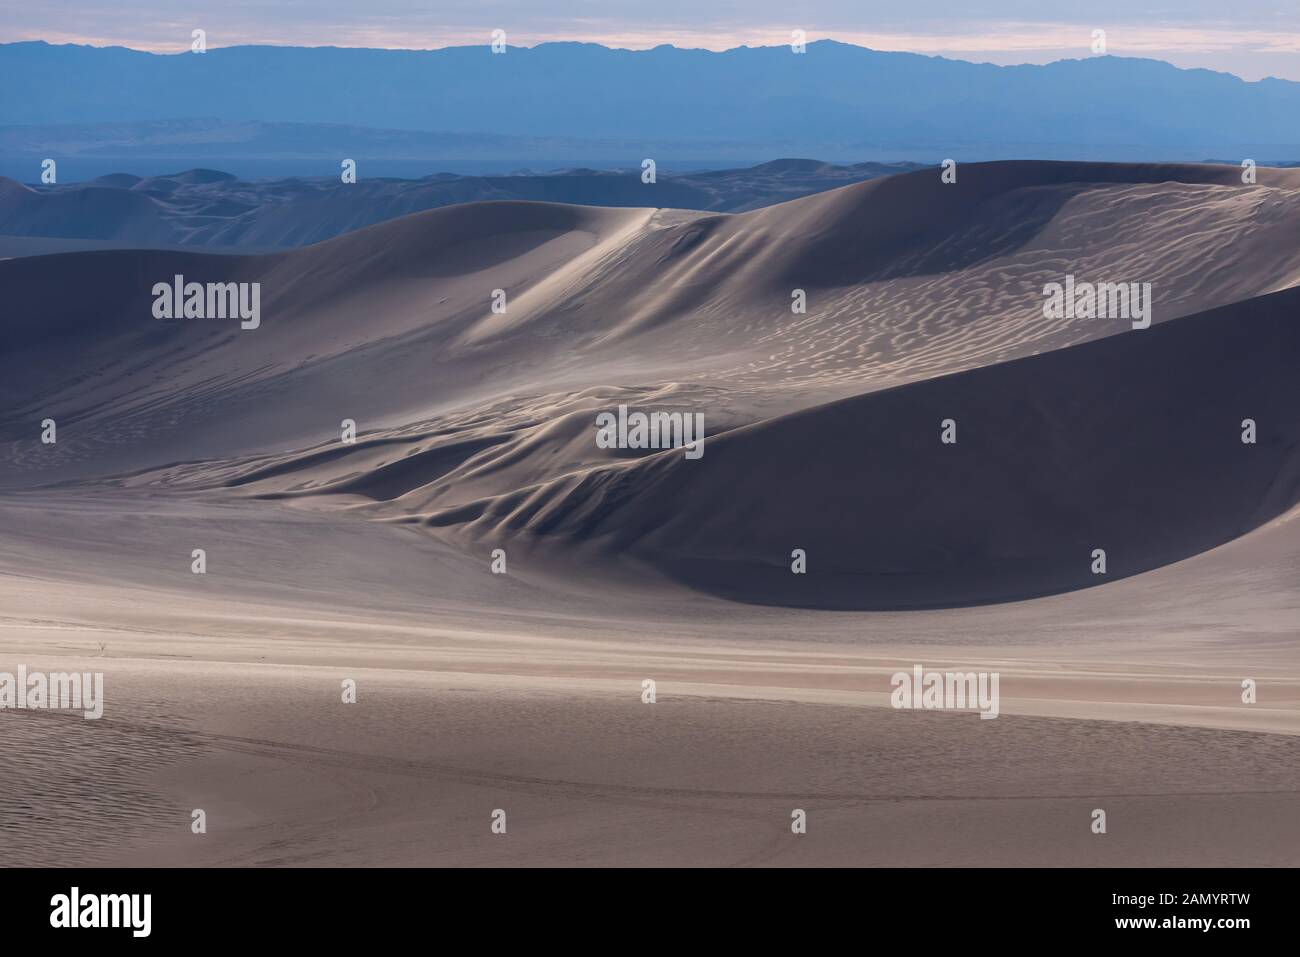 the shape of sand dunes in lut desert Stock Photo